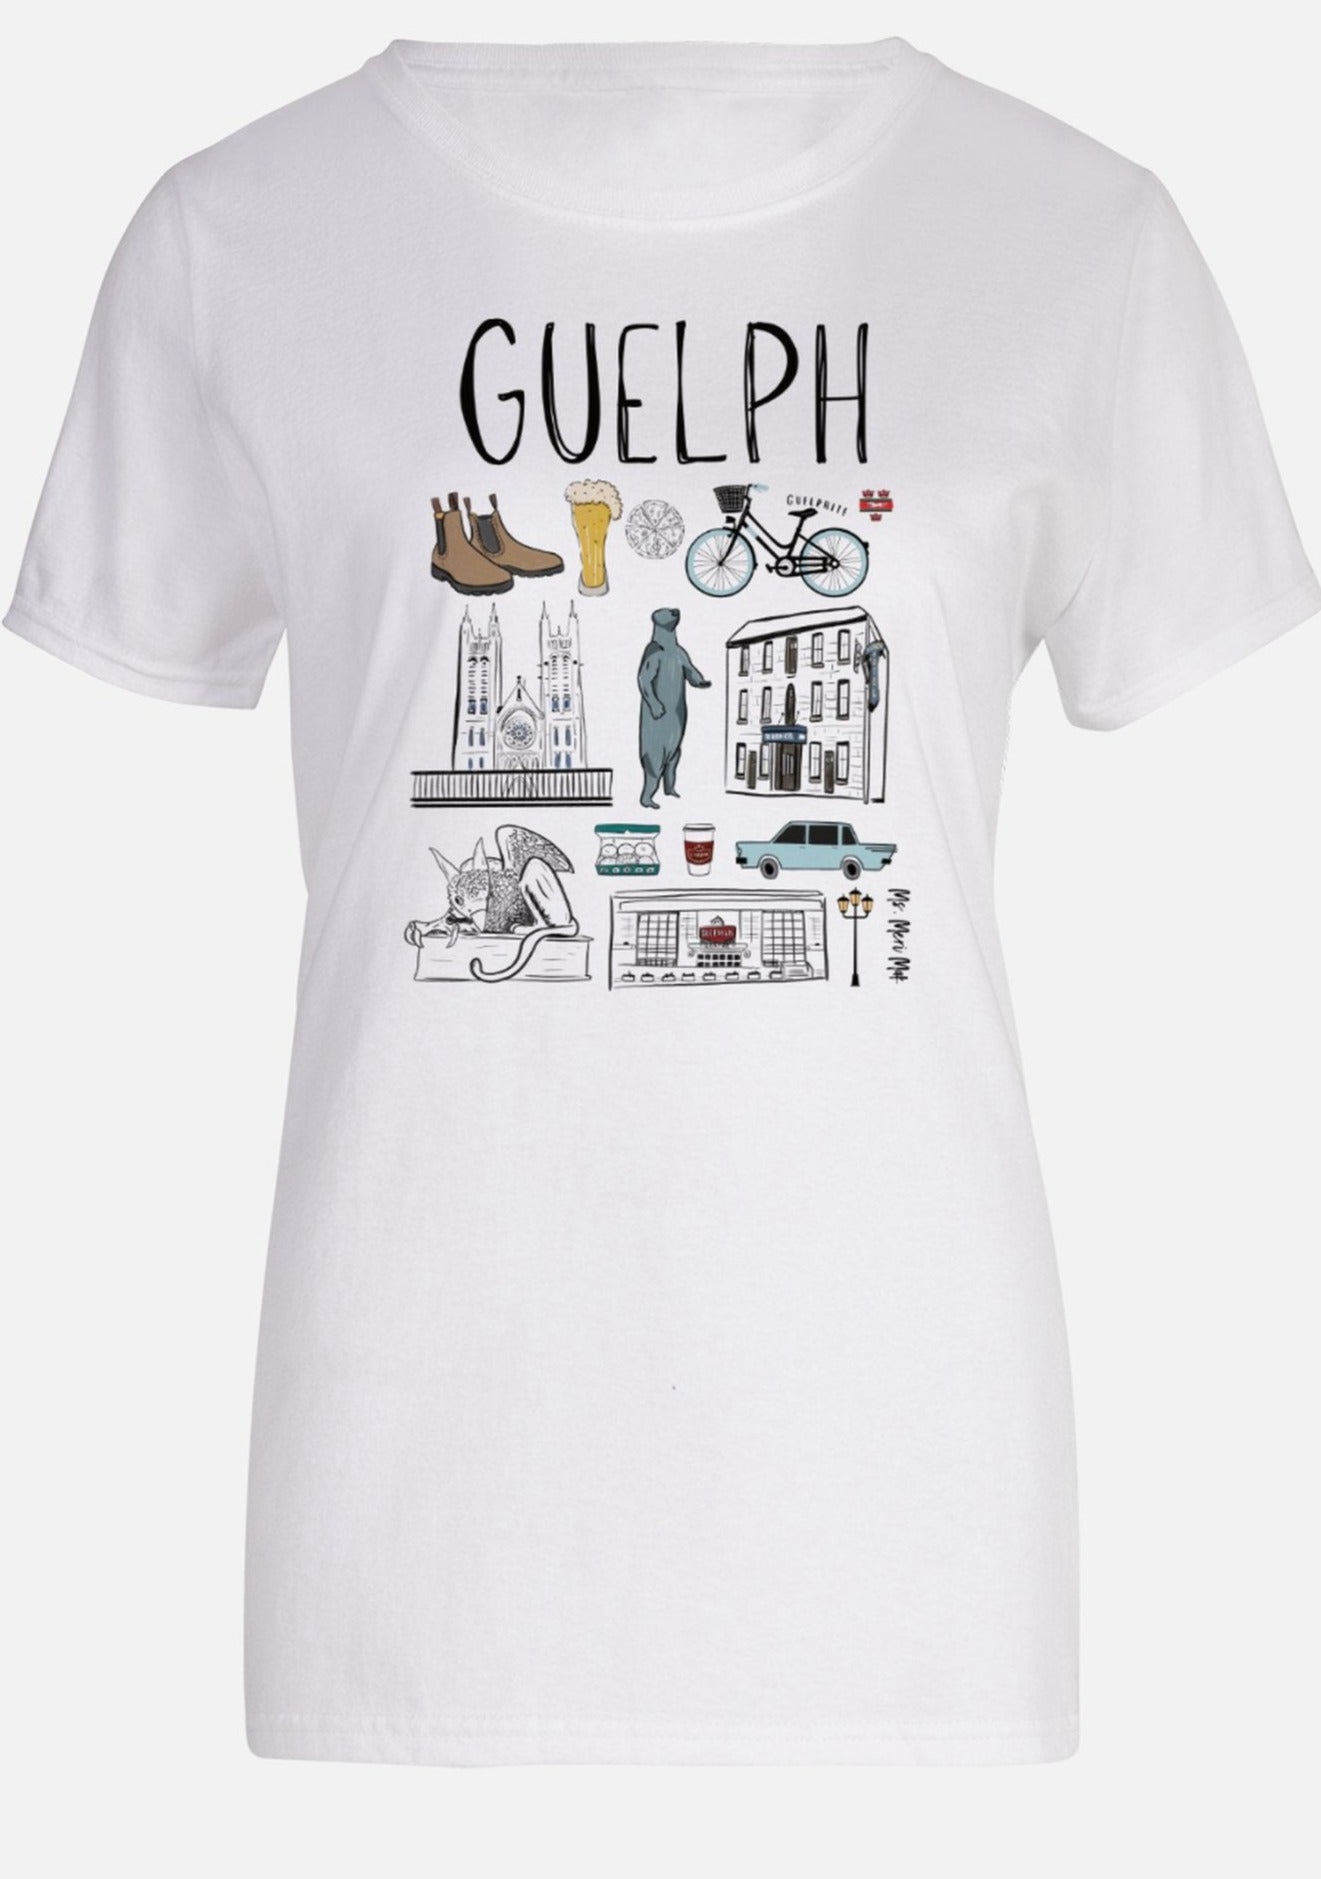 Guelph City T-Shirt - Ms.Meri Mak